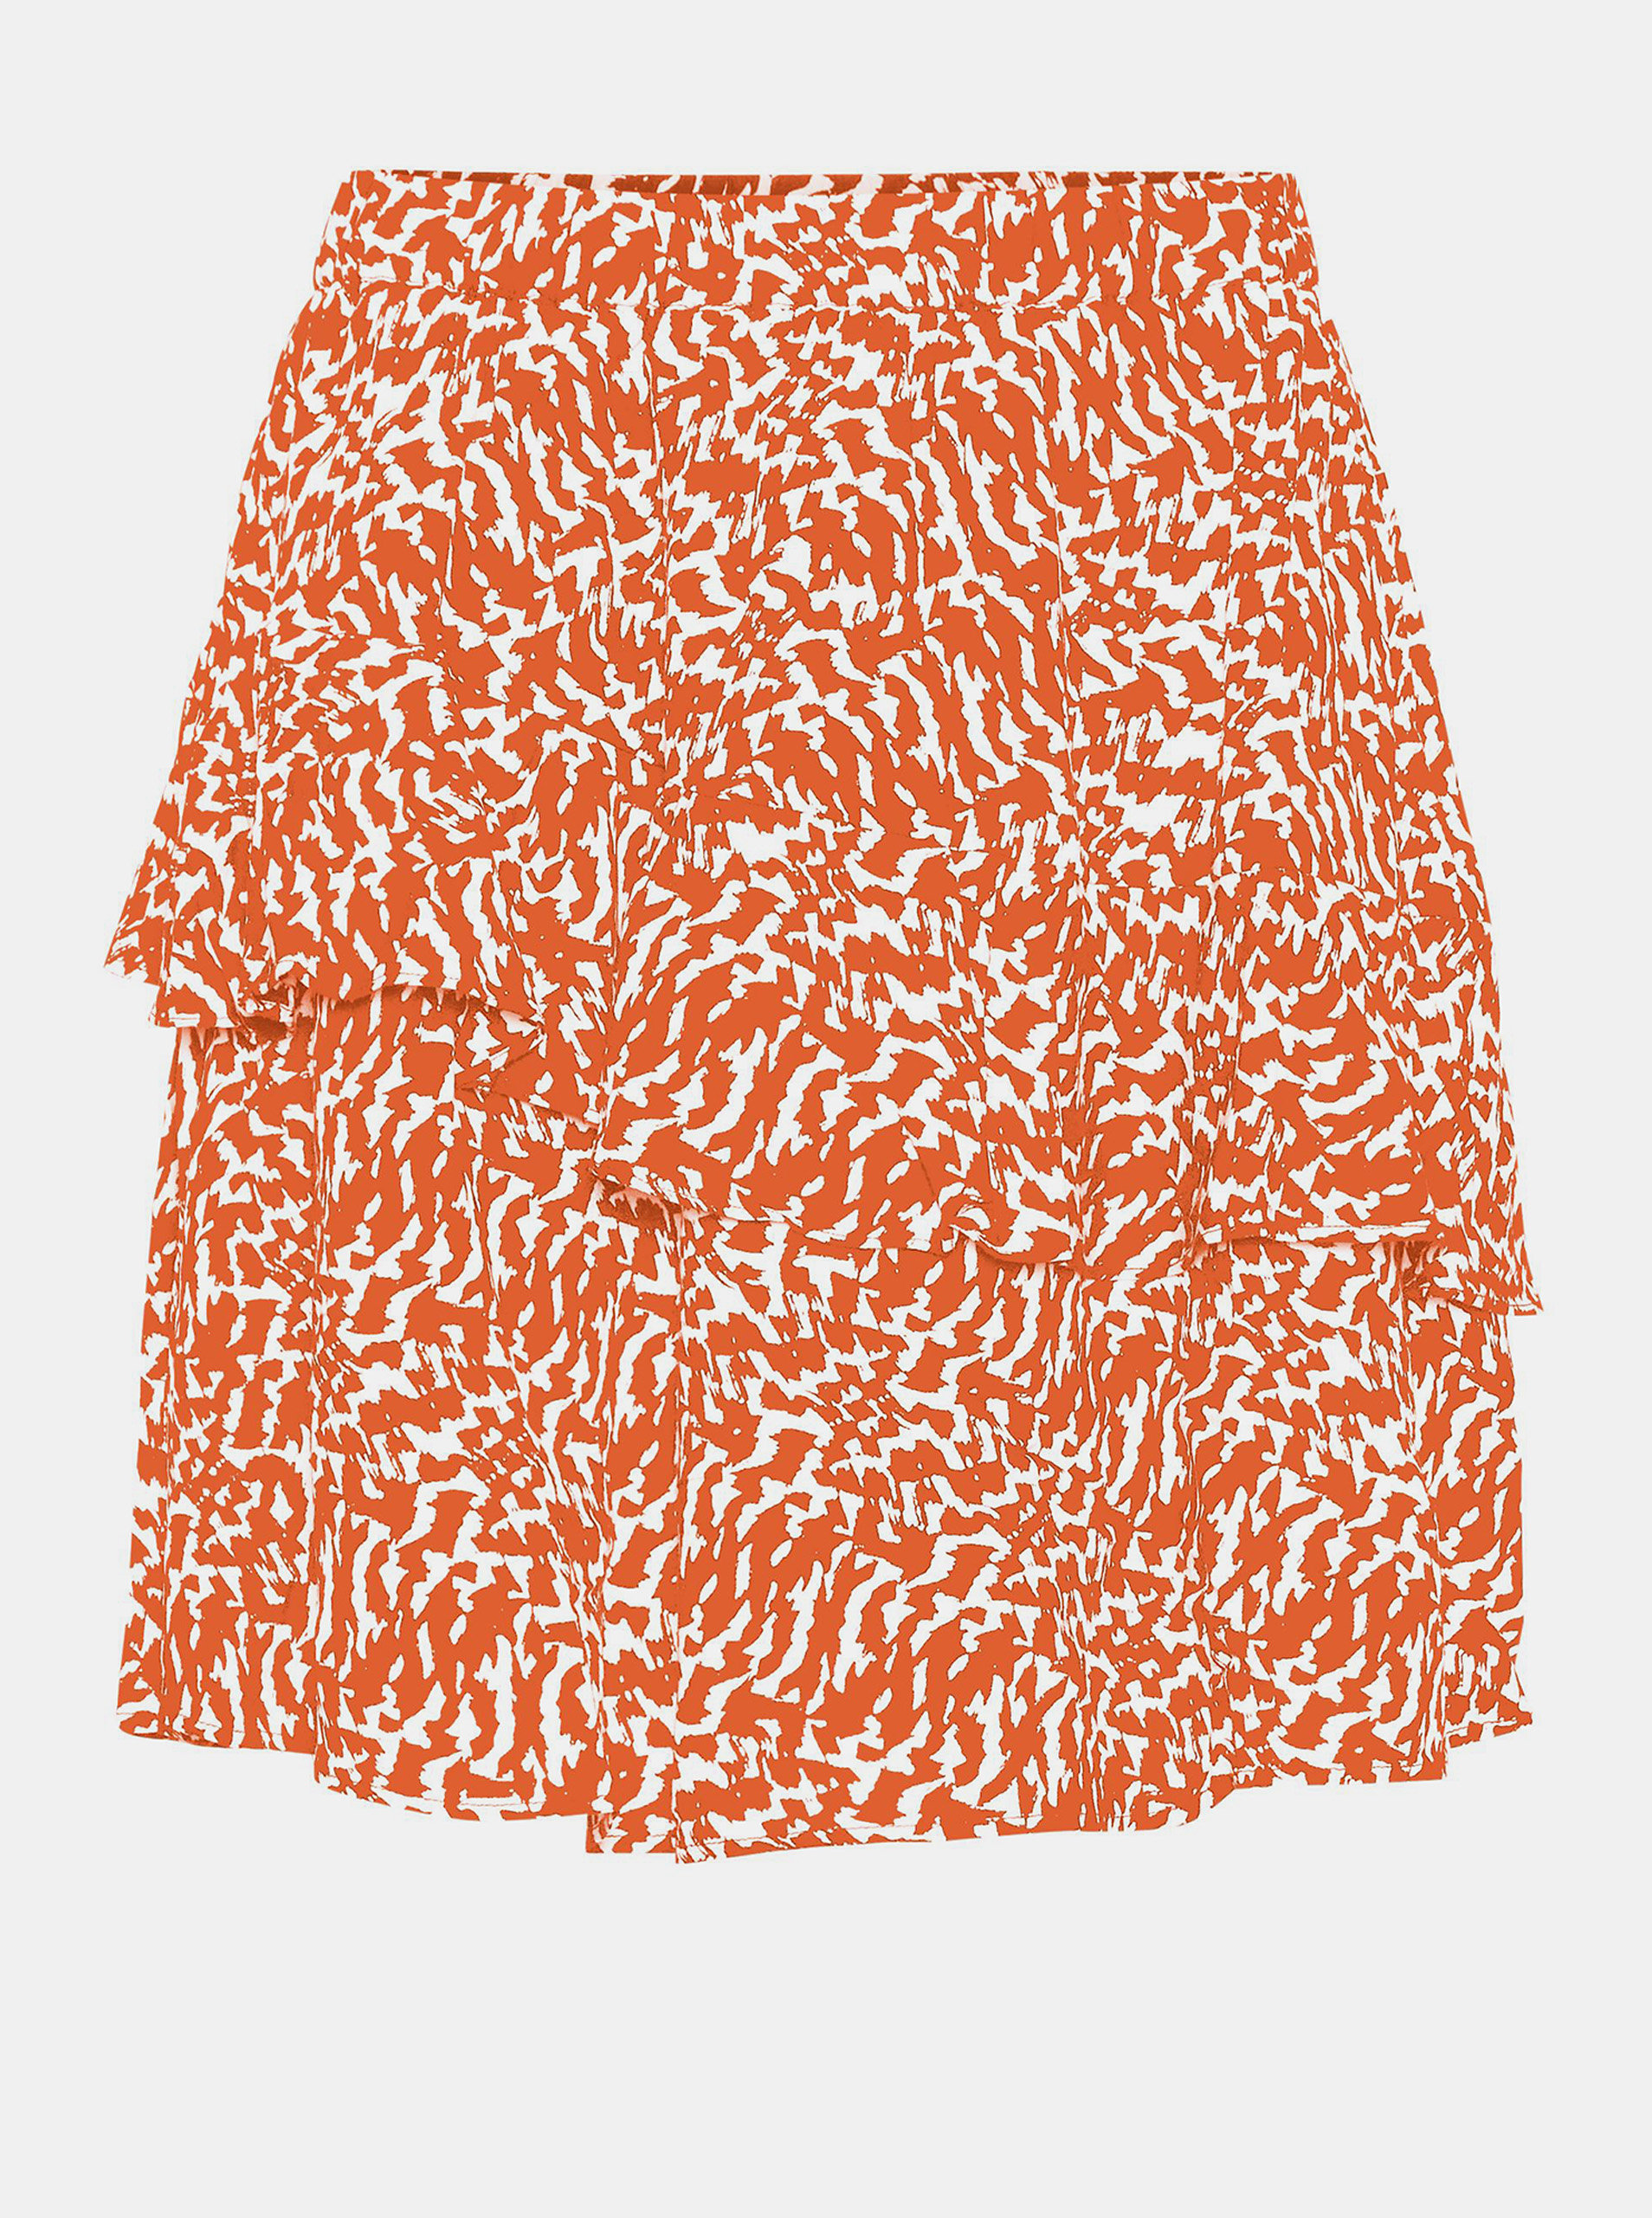 Fotografie Oranžová vzorovaná sukně AWARE by VERO MODA Hanna